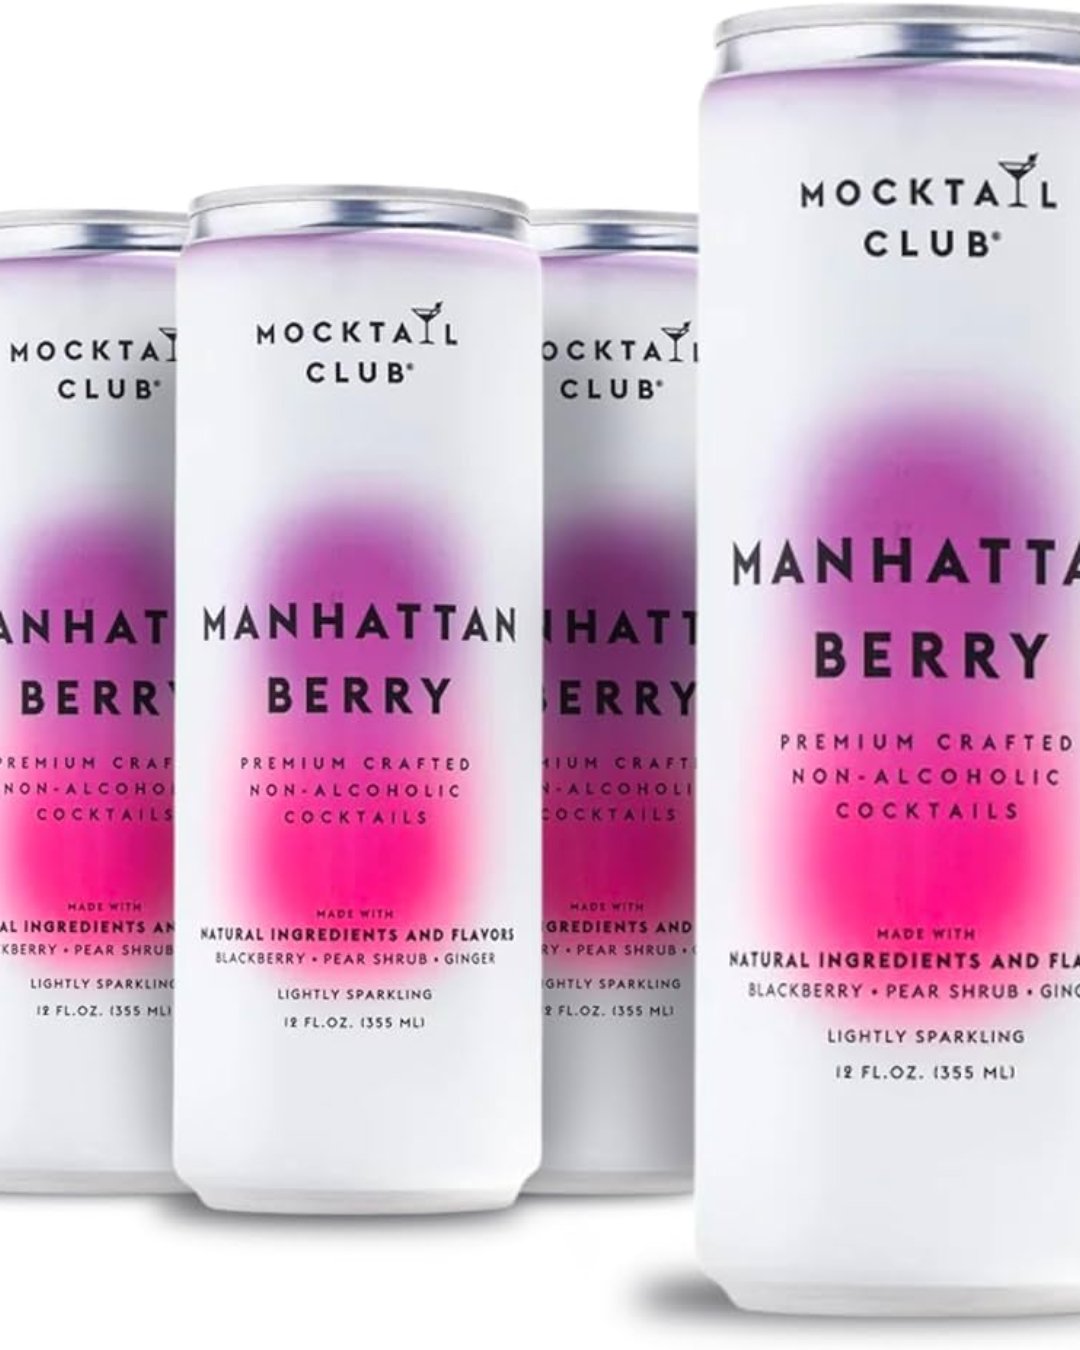 Mocktail Club: Manhattan Berry - The Village Retail